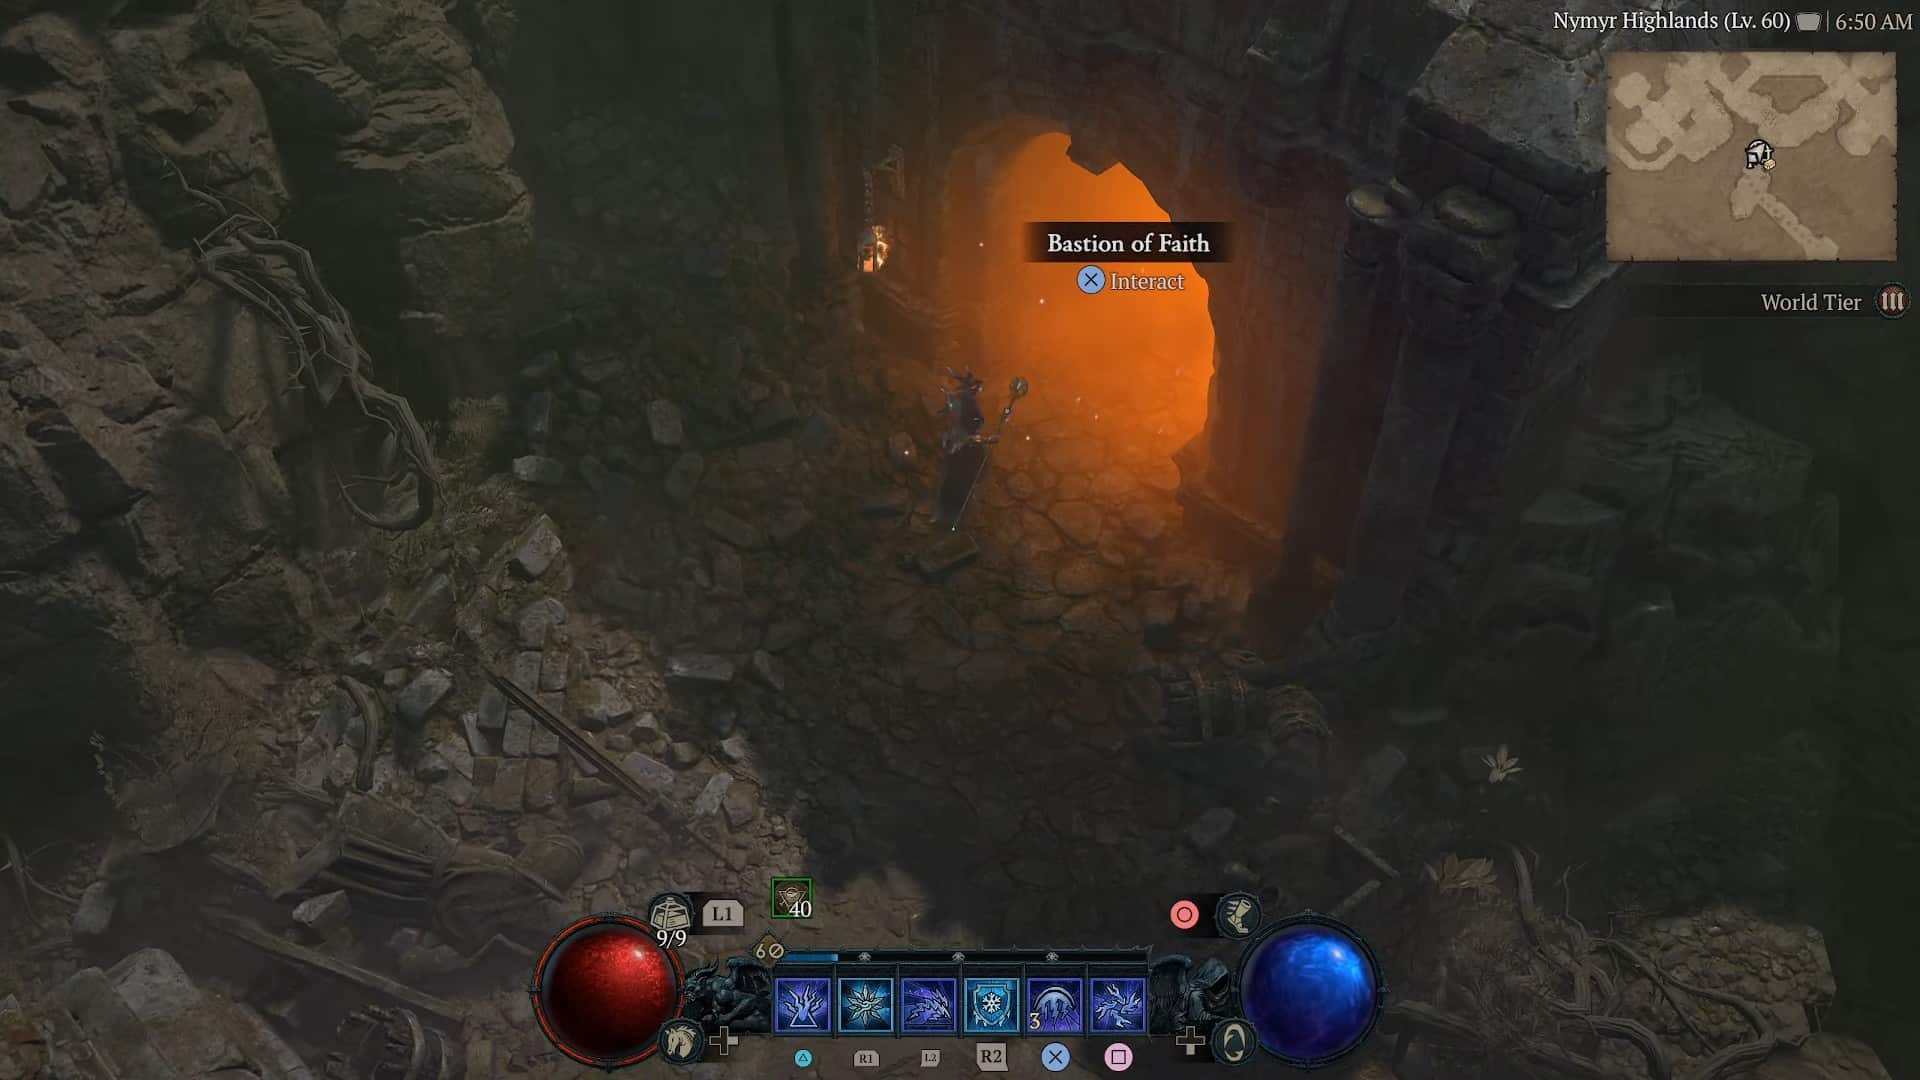 Bastion of Faith in Diablo 4